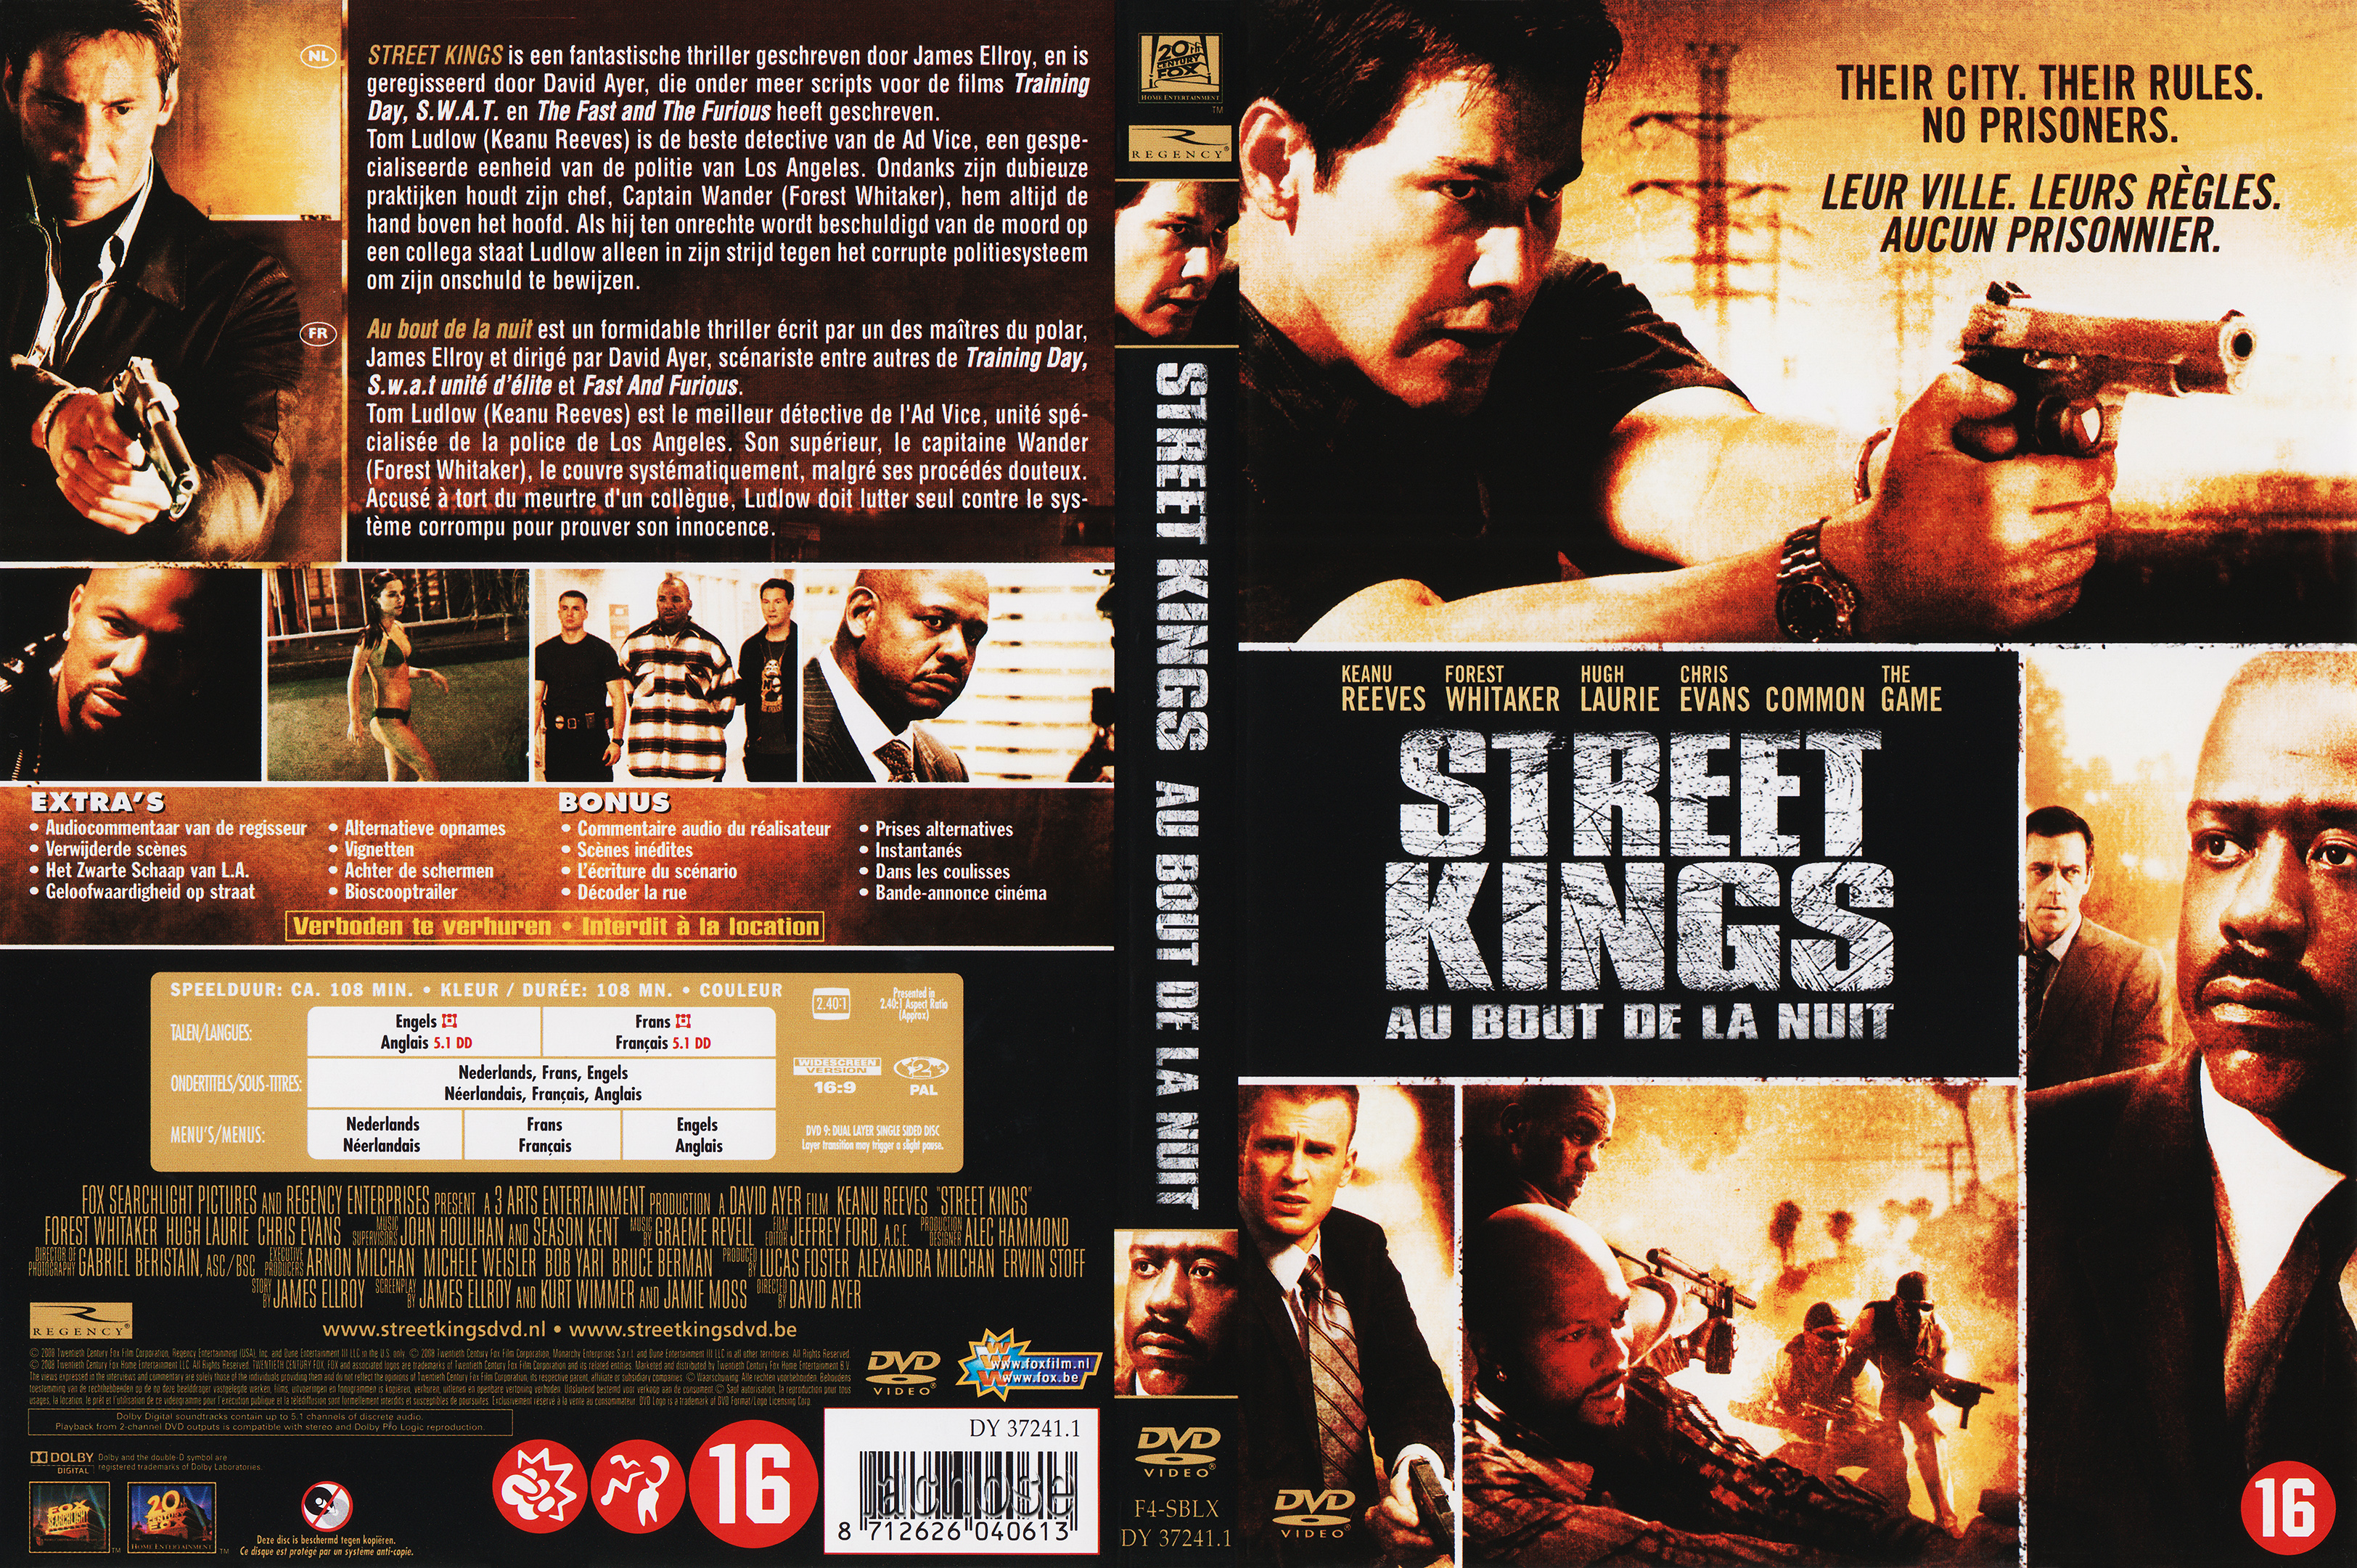 Jaquette DVD Street kings au bout de la nuit